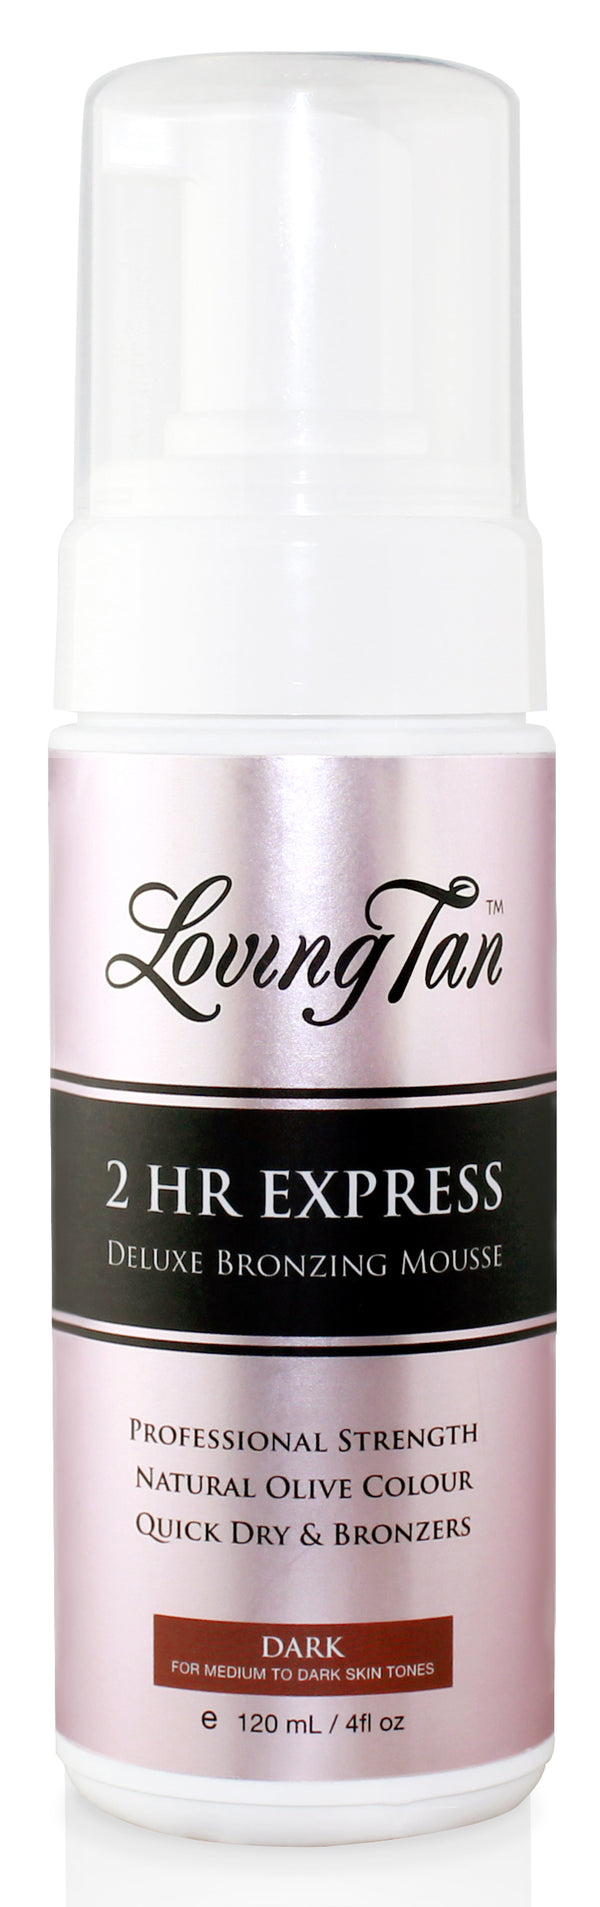 Loving Tan 2 HR Express Dark Self Tanning Mousse 120ml